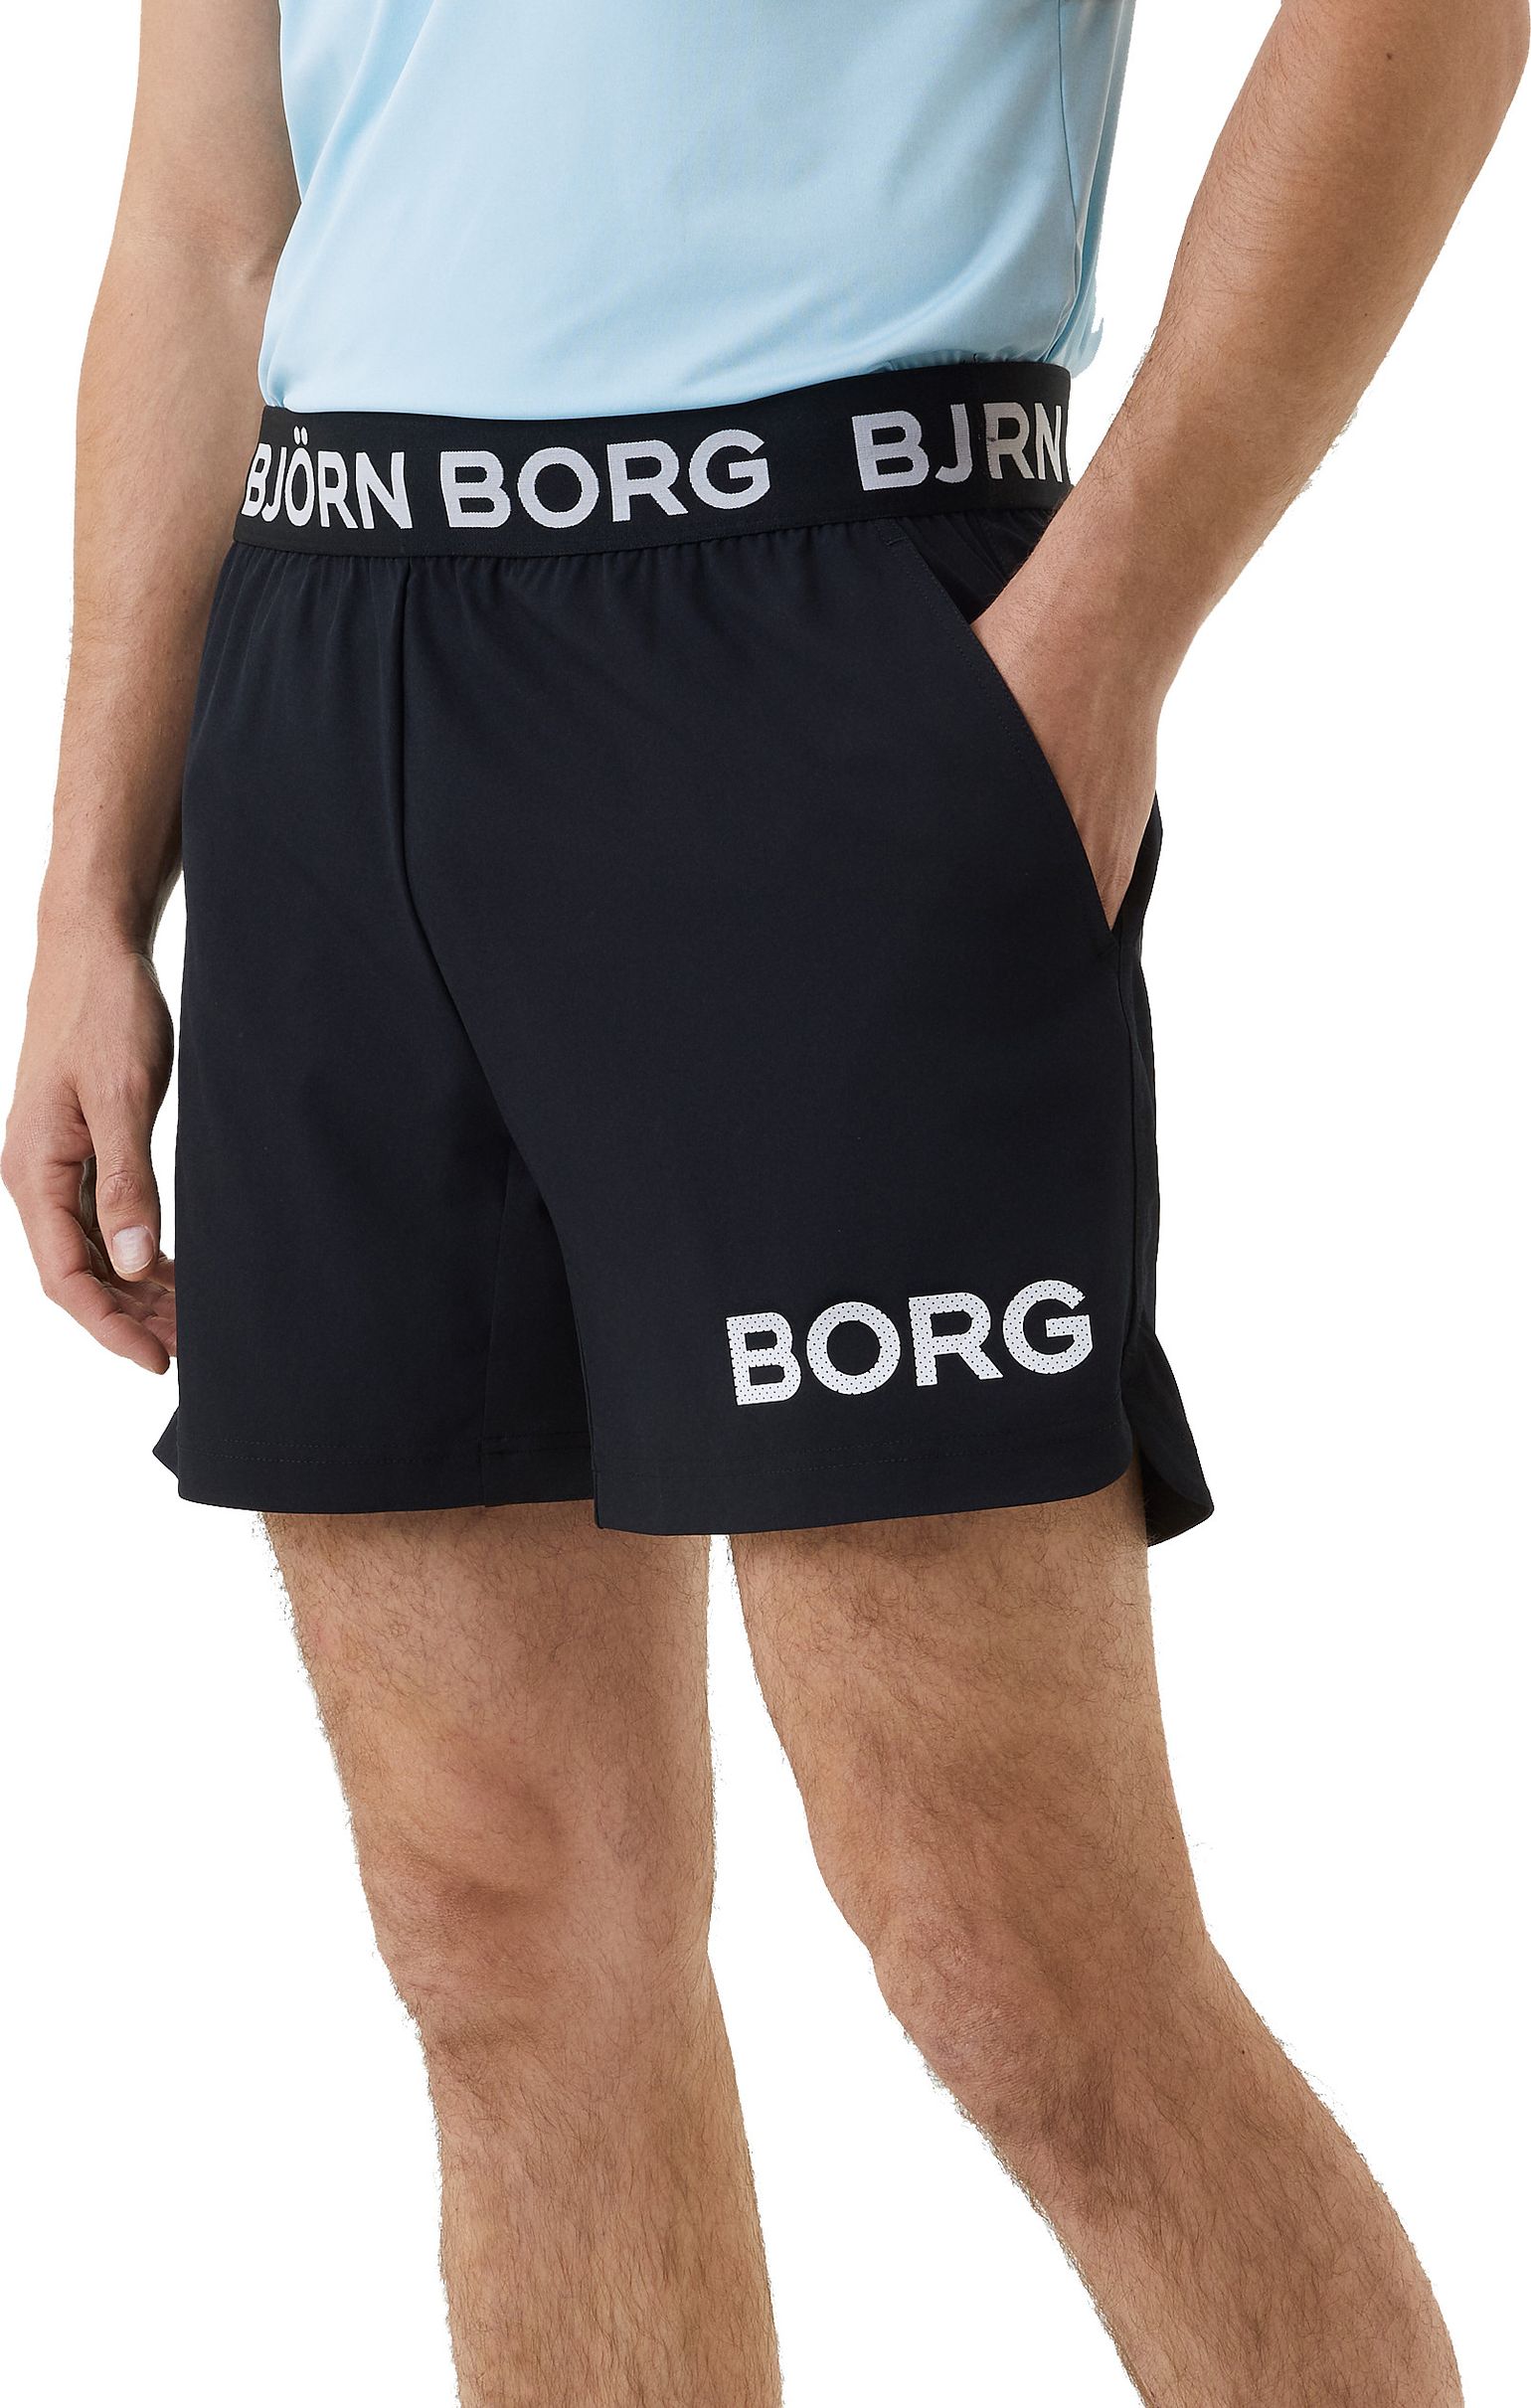 Björn Borg Men's Borg Short Shorts Black Beauty/White